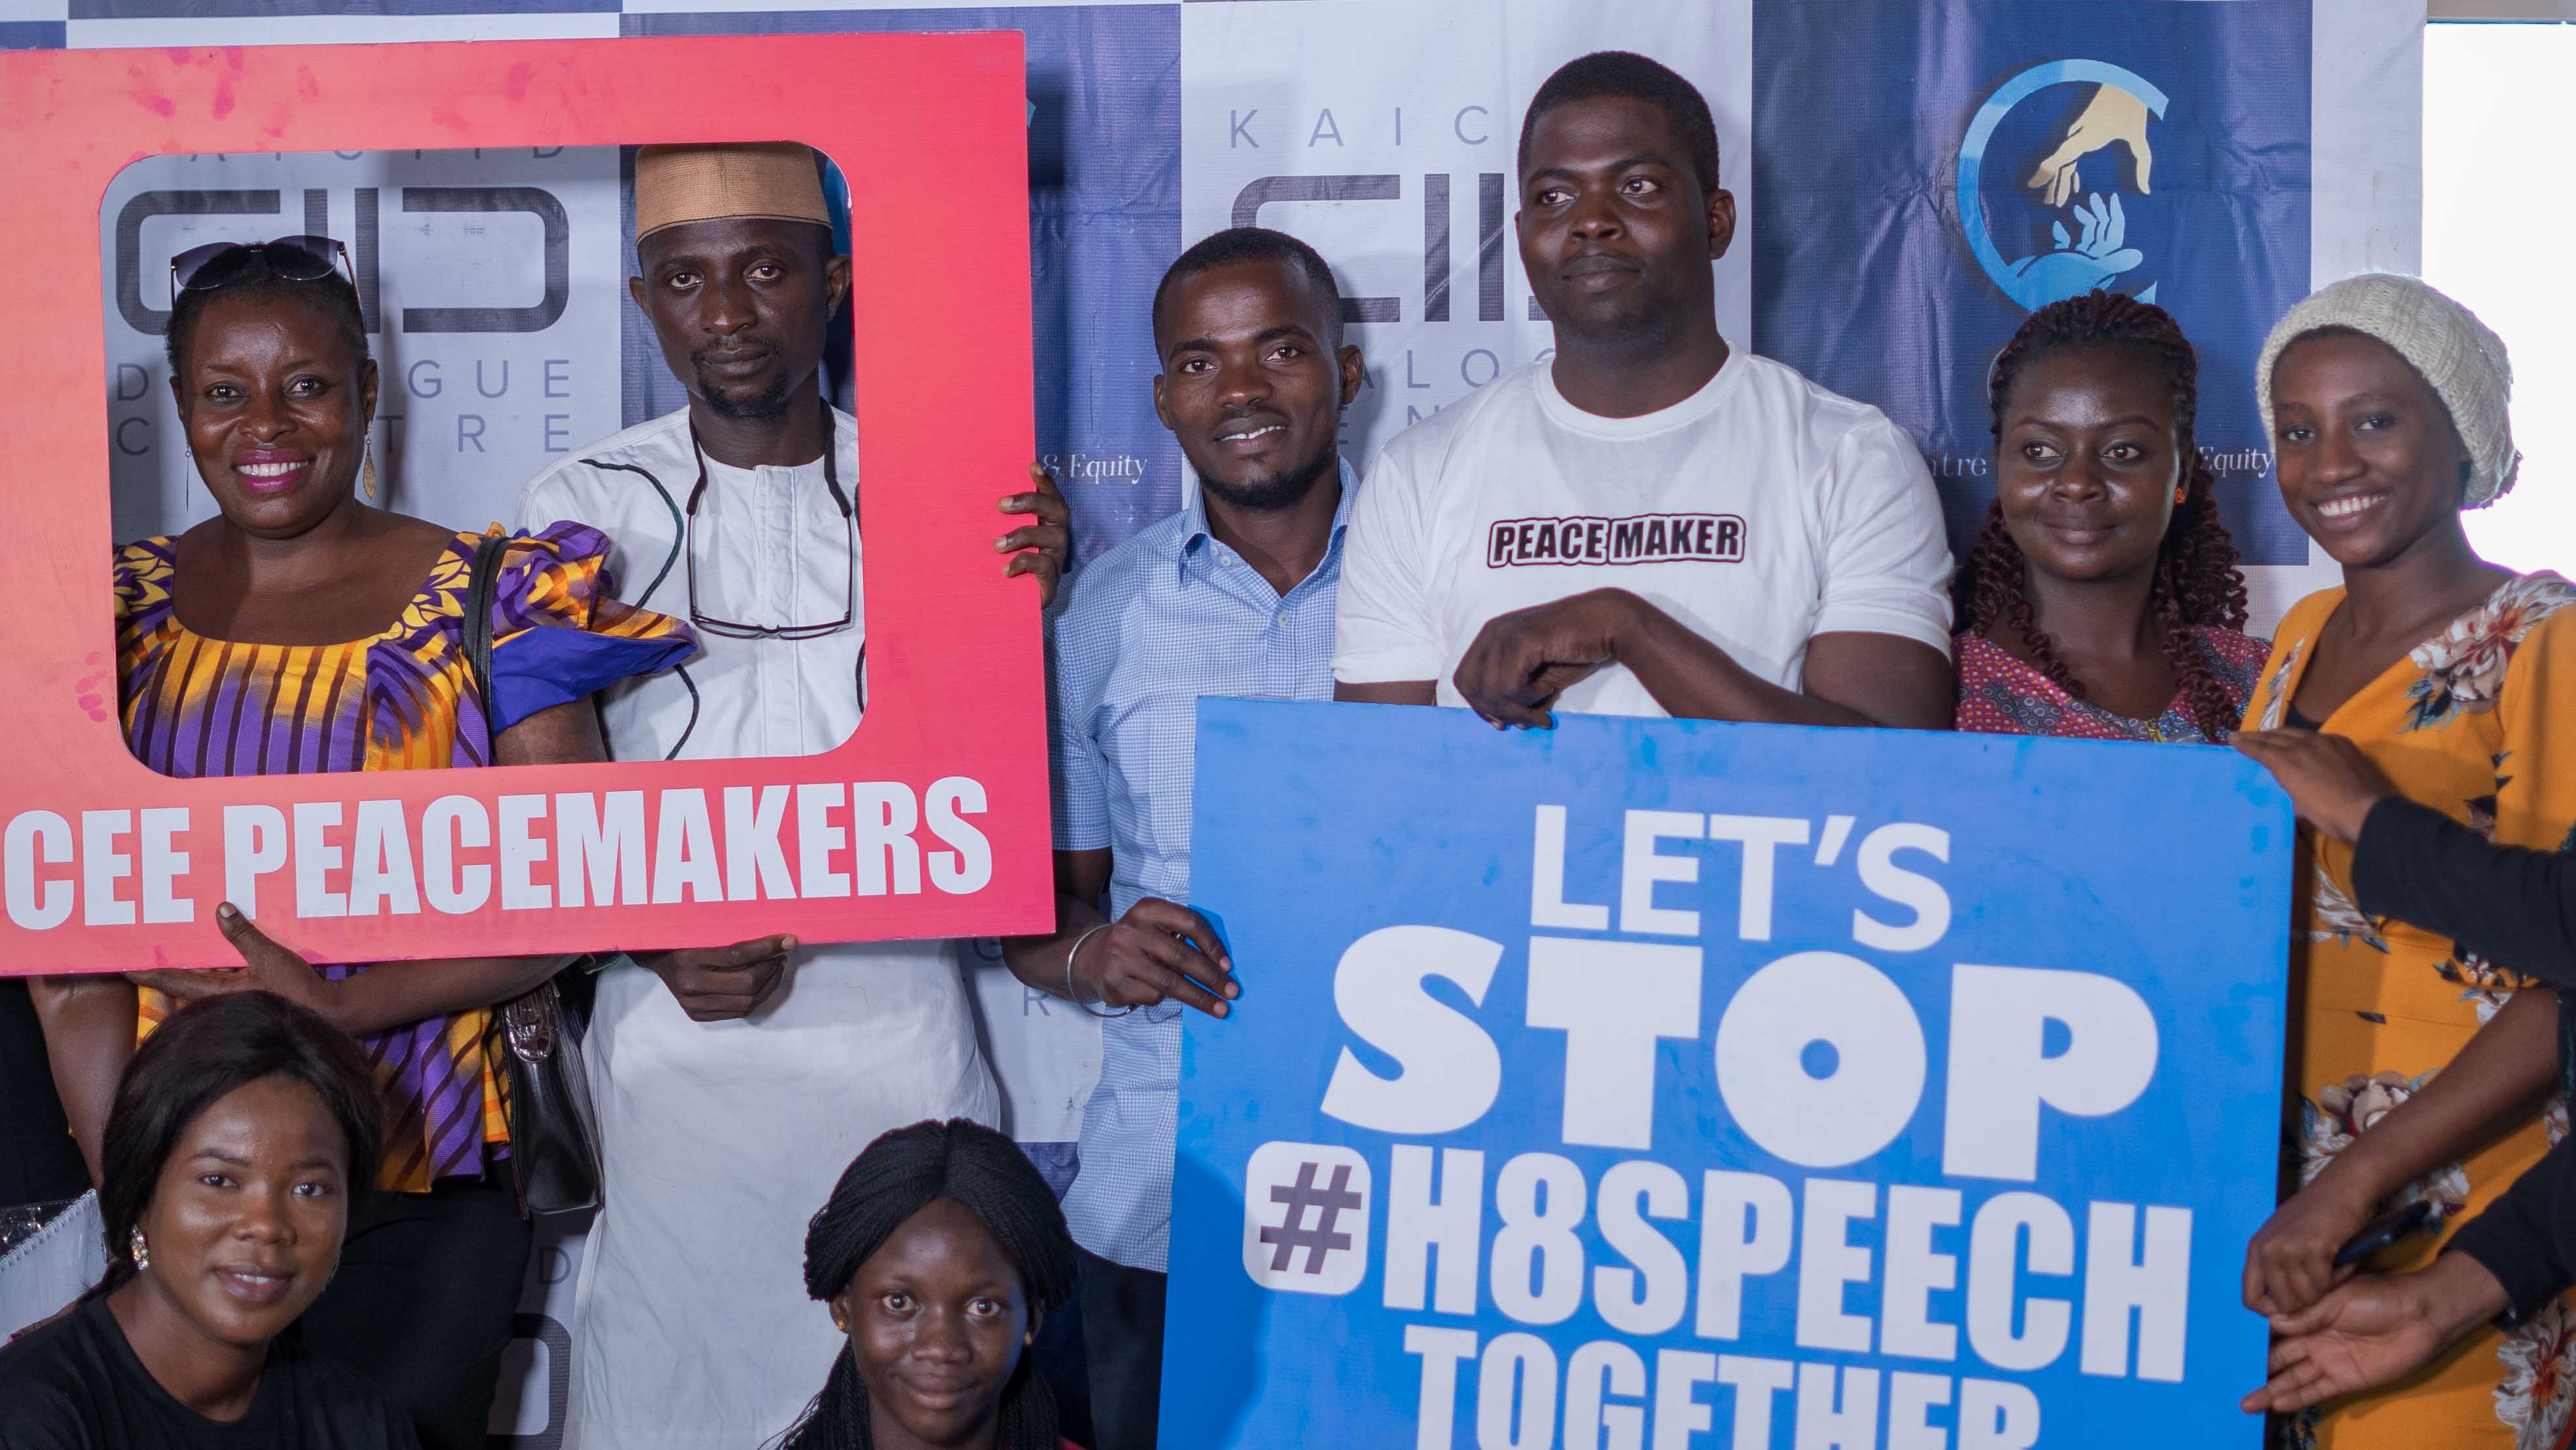 Junge Menschen starten virtuelles Projekt zur Friedensförderung in Nigeria